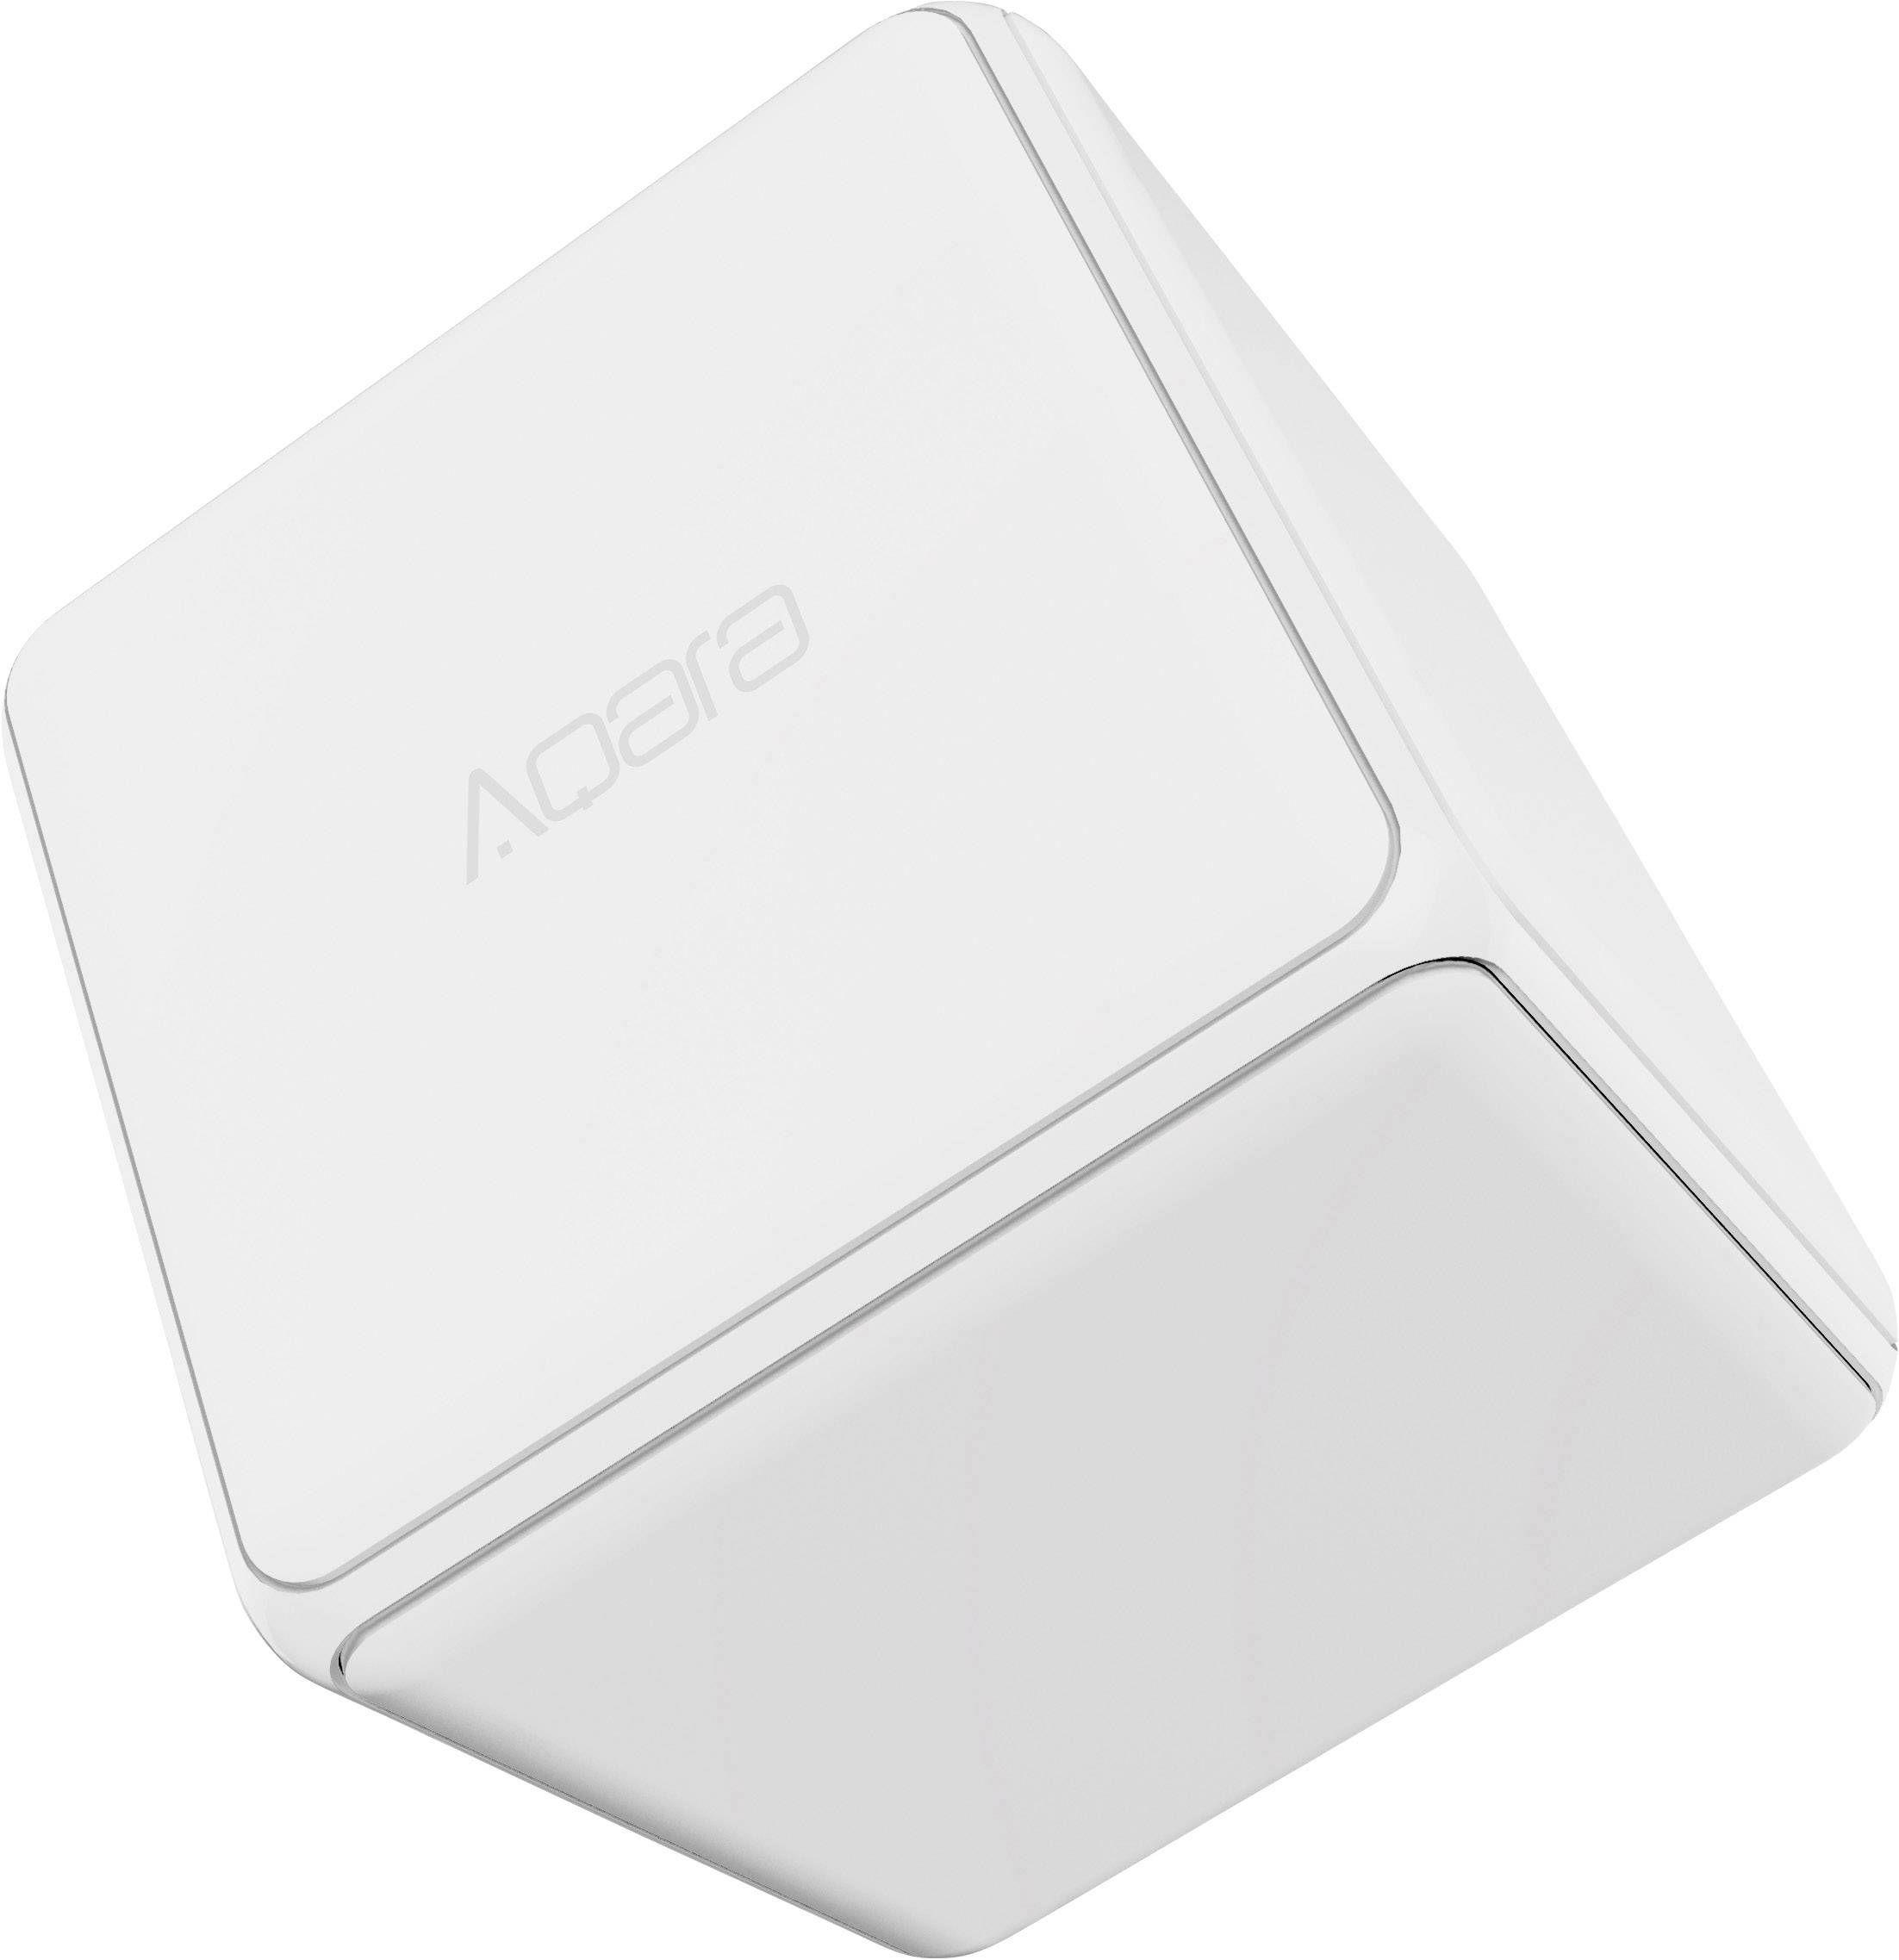 Kostka sterująca Xiaomi Aqara Cube - biała